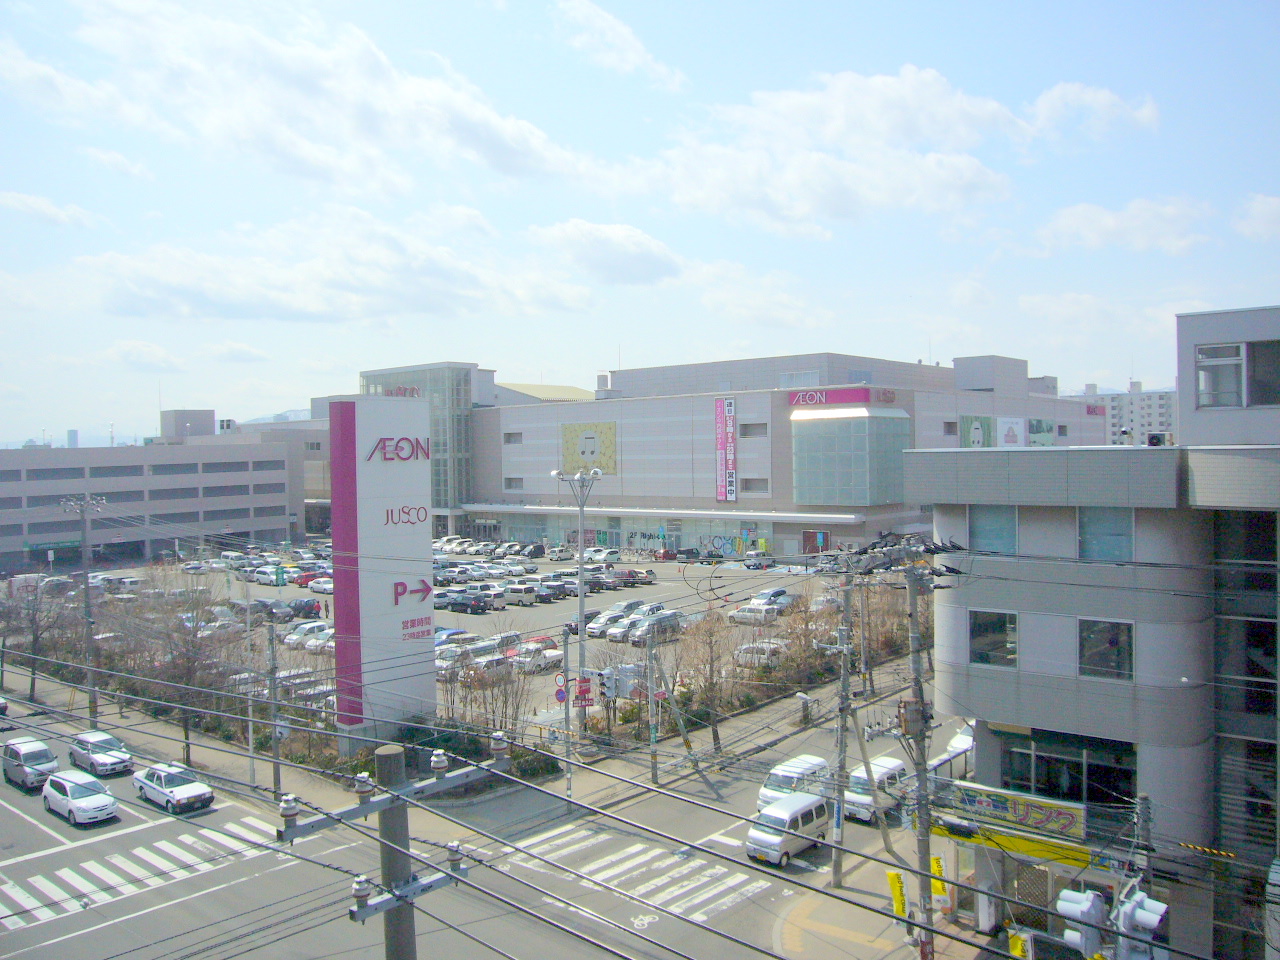 Shopping centre. Ion Sapporo Motomachi Shopping Center (Shopping Center) up to 100m